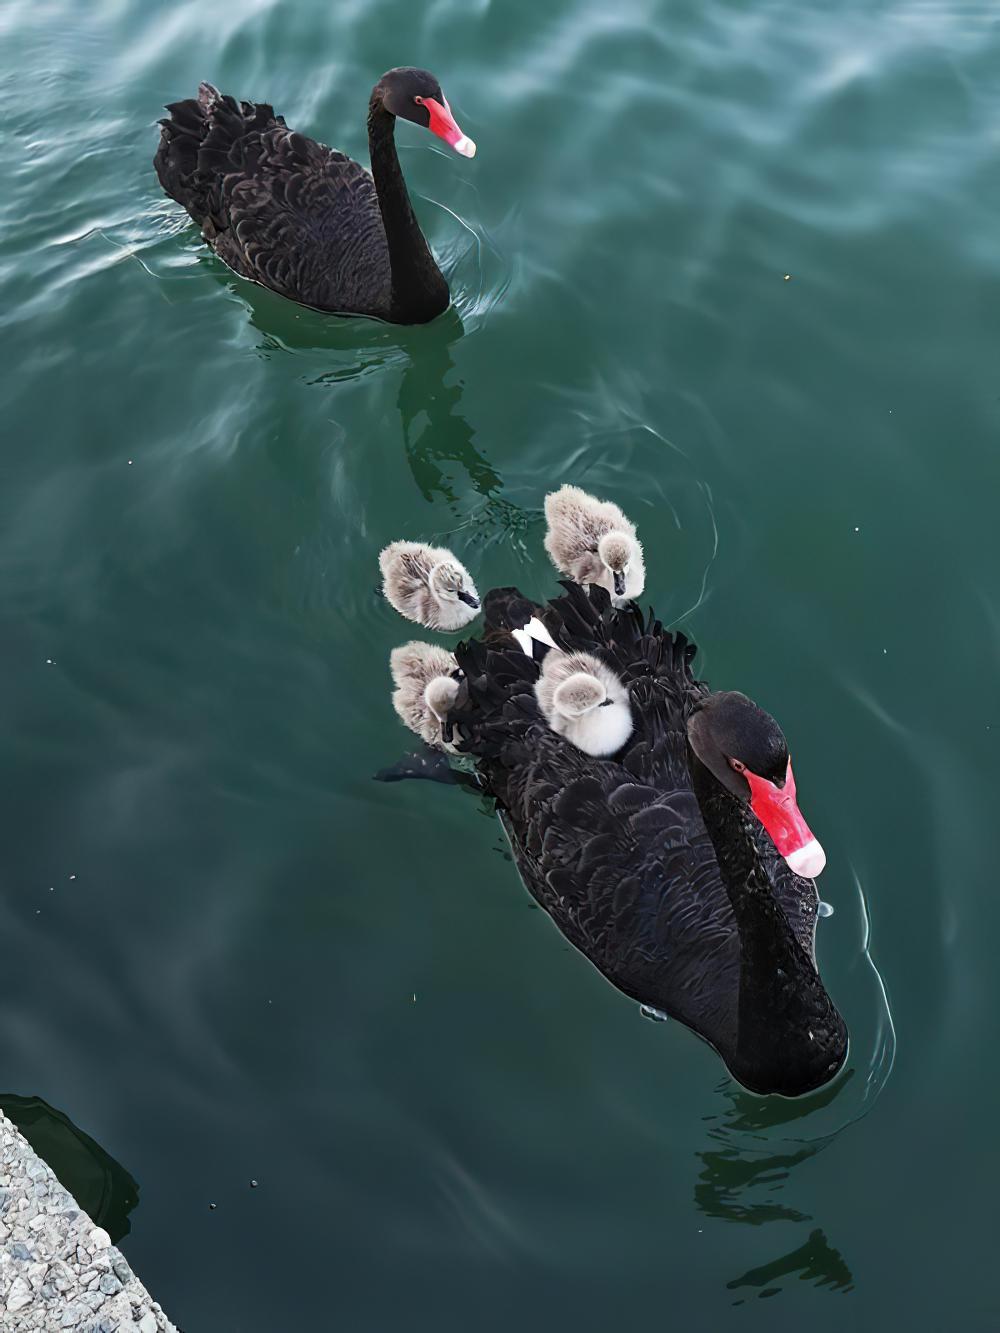 黑天鹅 / Black Swan / Cygnus atratus